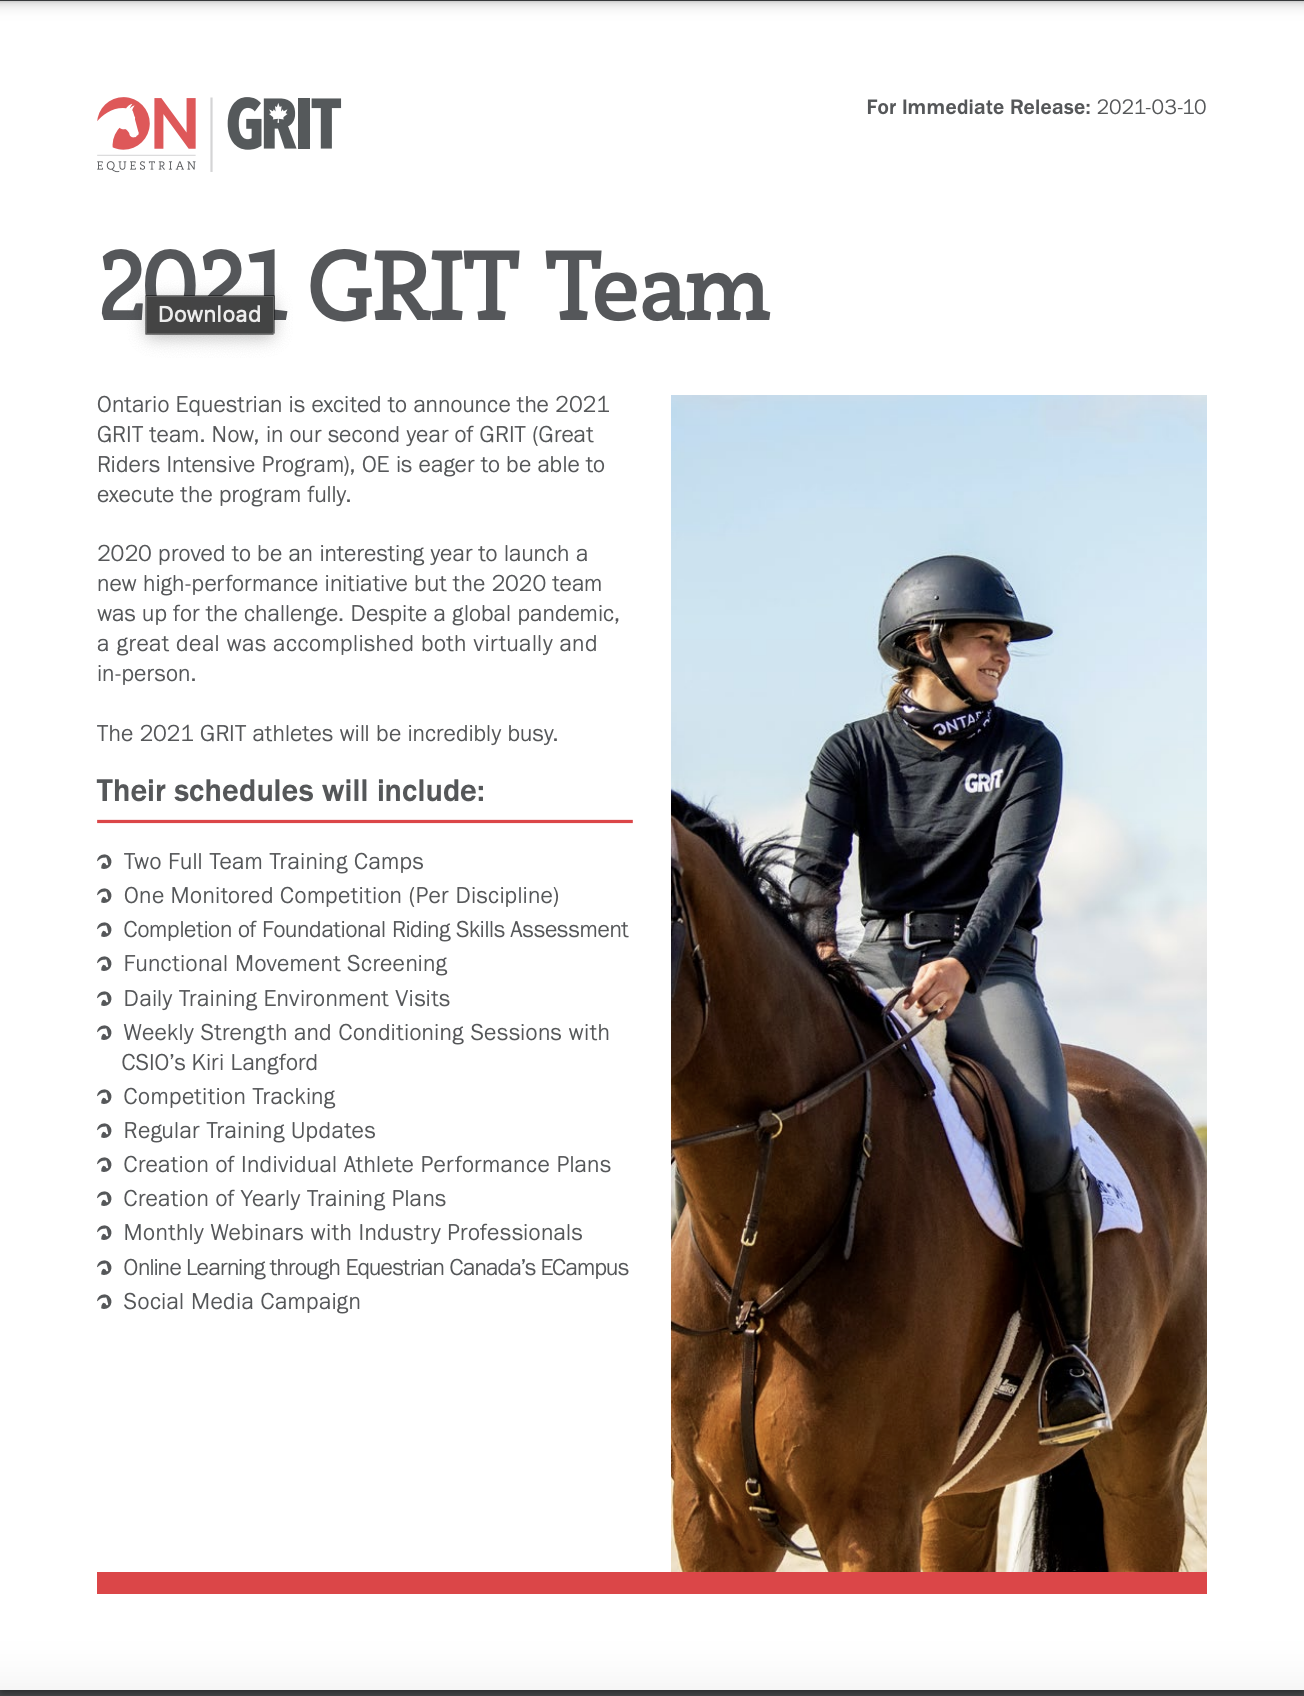 Grit Press Release 2021